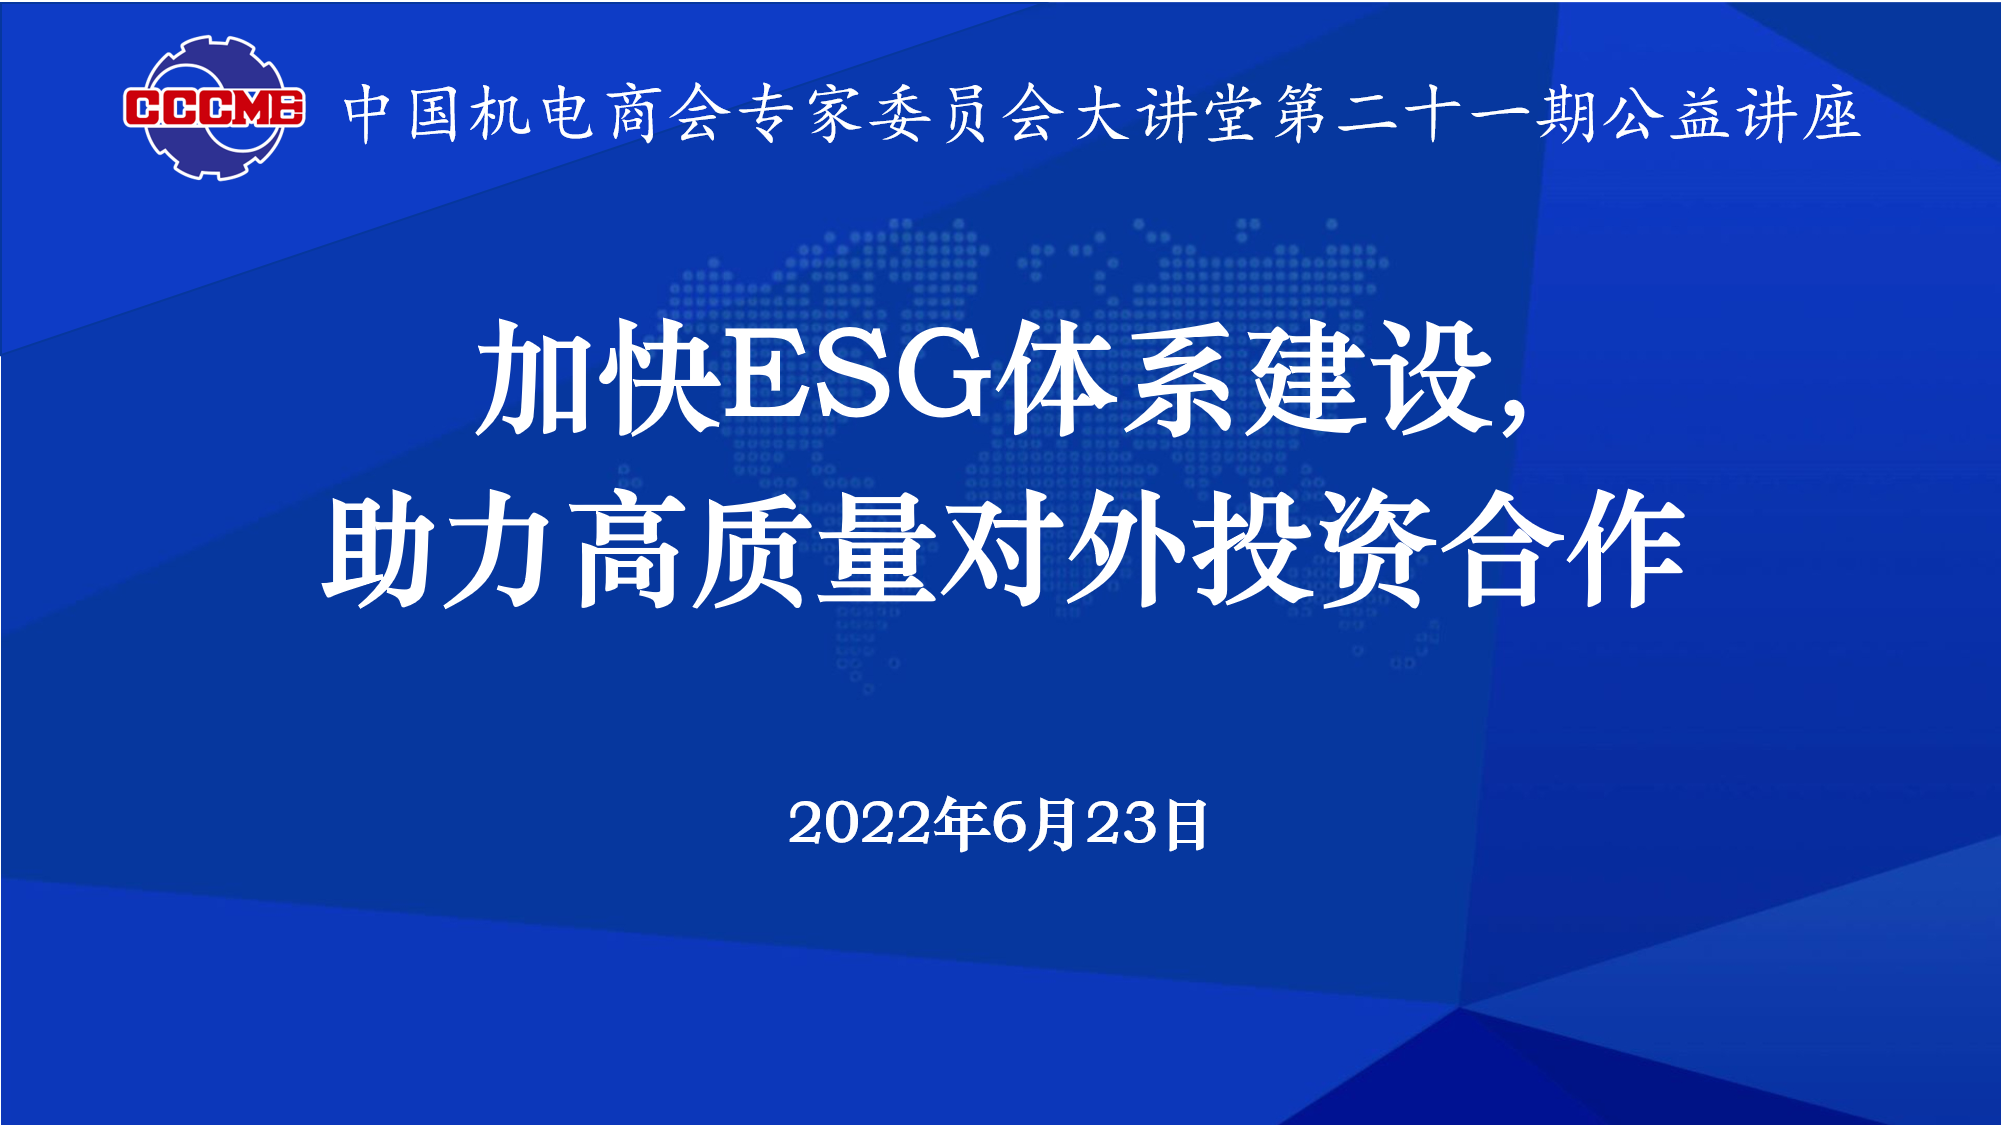 中国机电商会专家委员会成功举办 “加快ESG体系建设，助力高质量对外投资合作”公益讲座